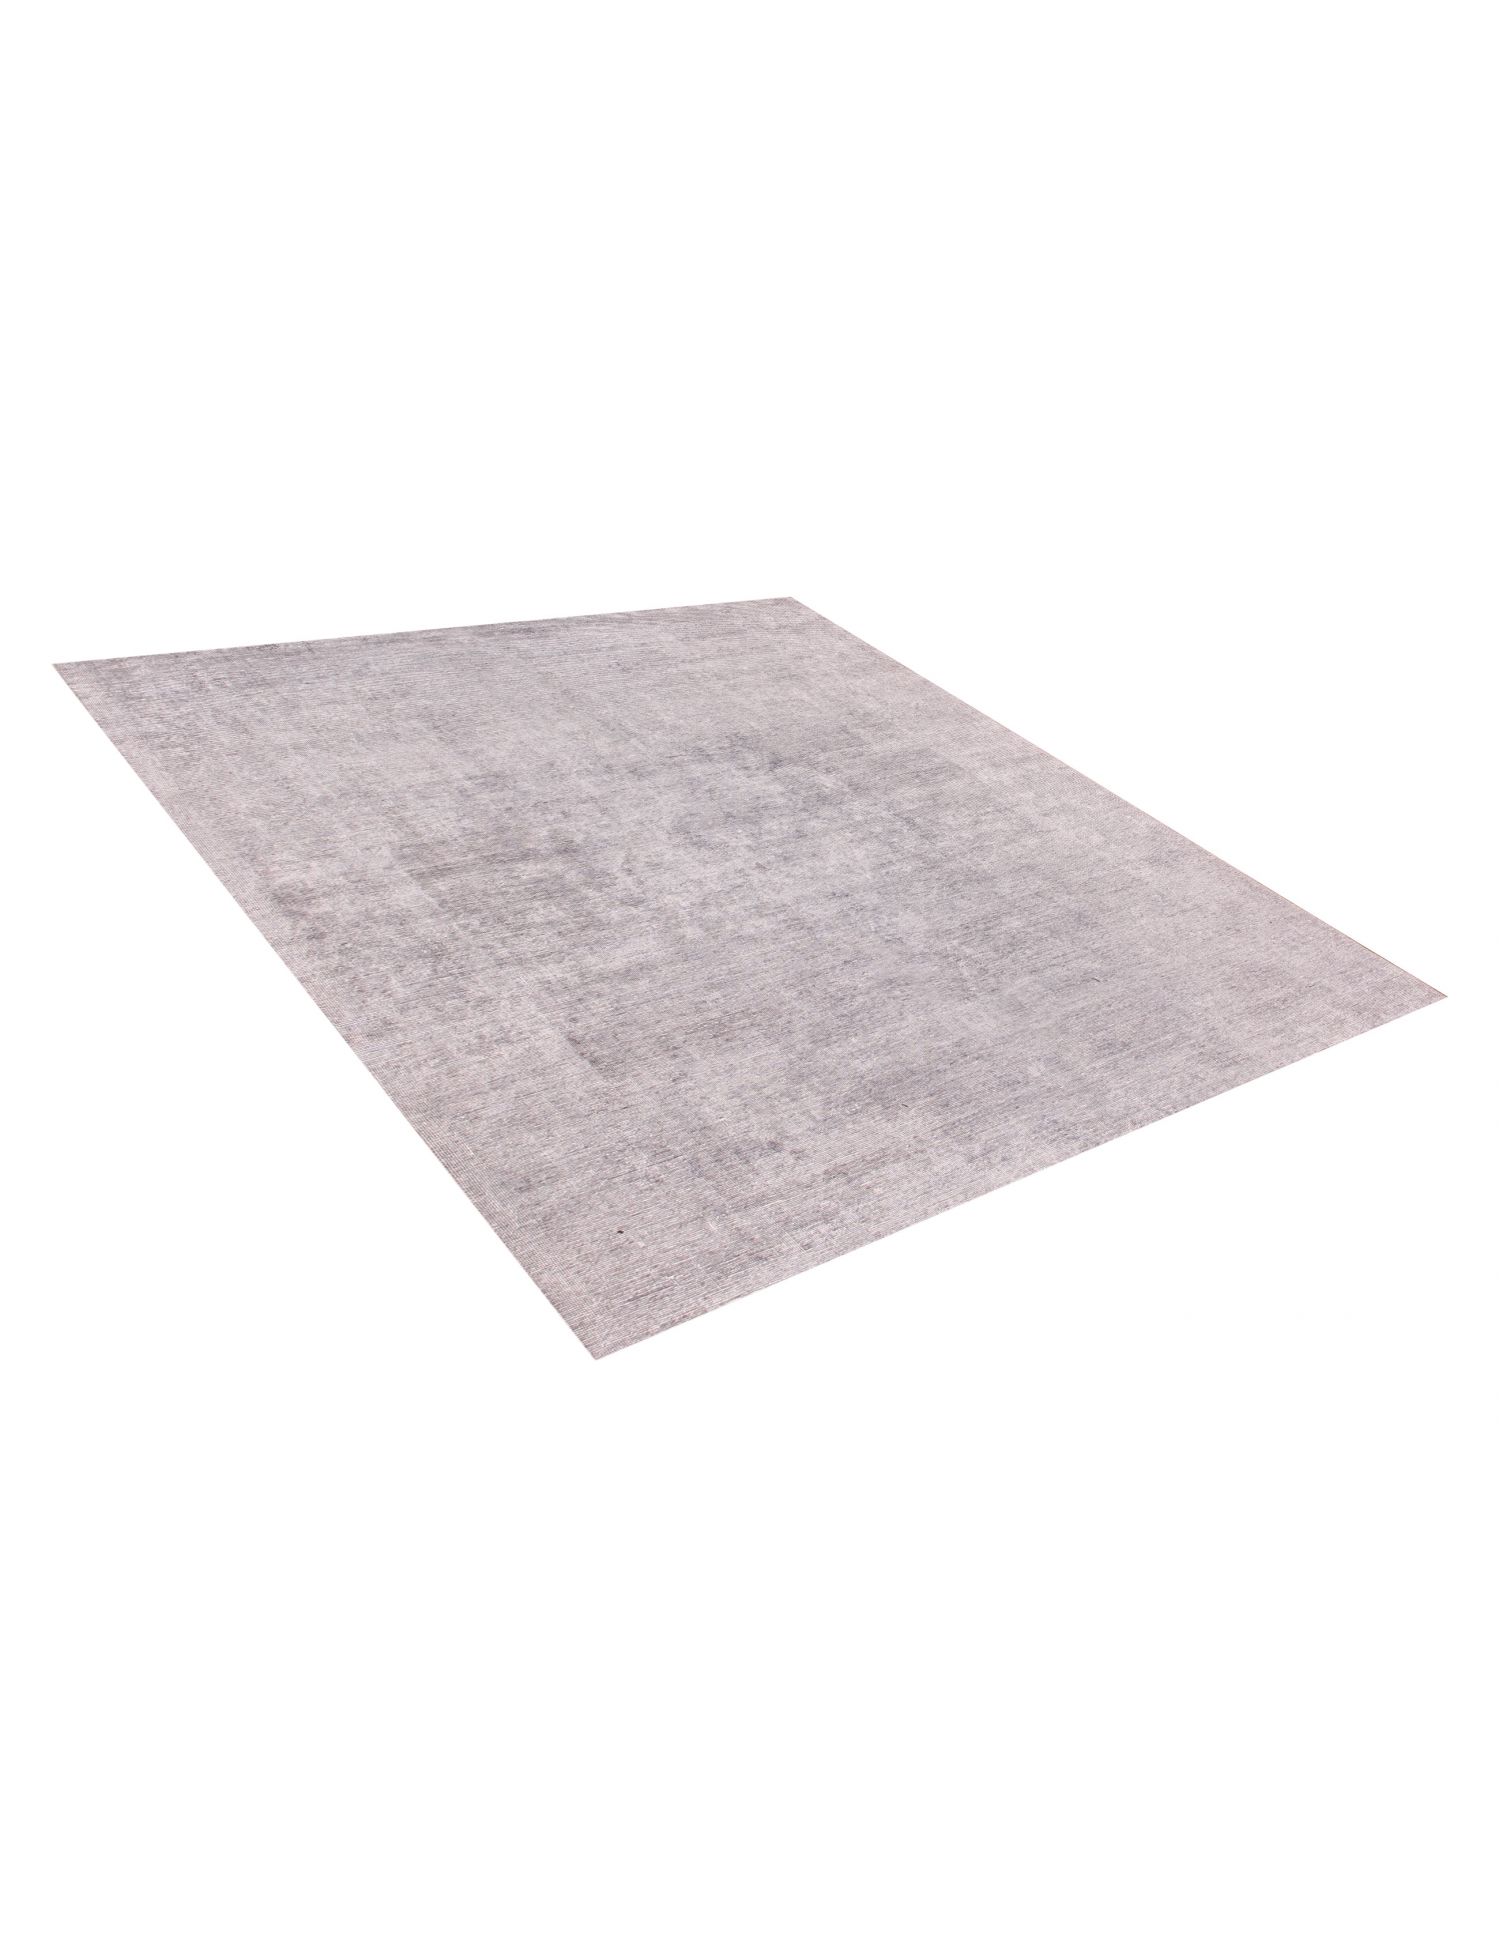 Quadrat  Vintage Teppich  grau <br/>242 x 242 cm